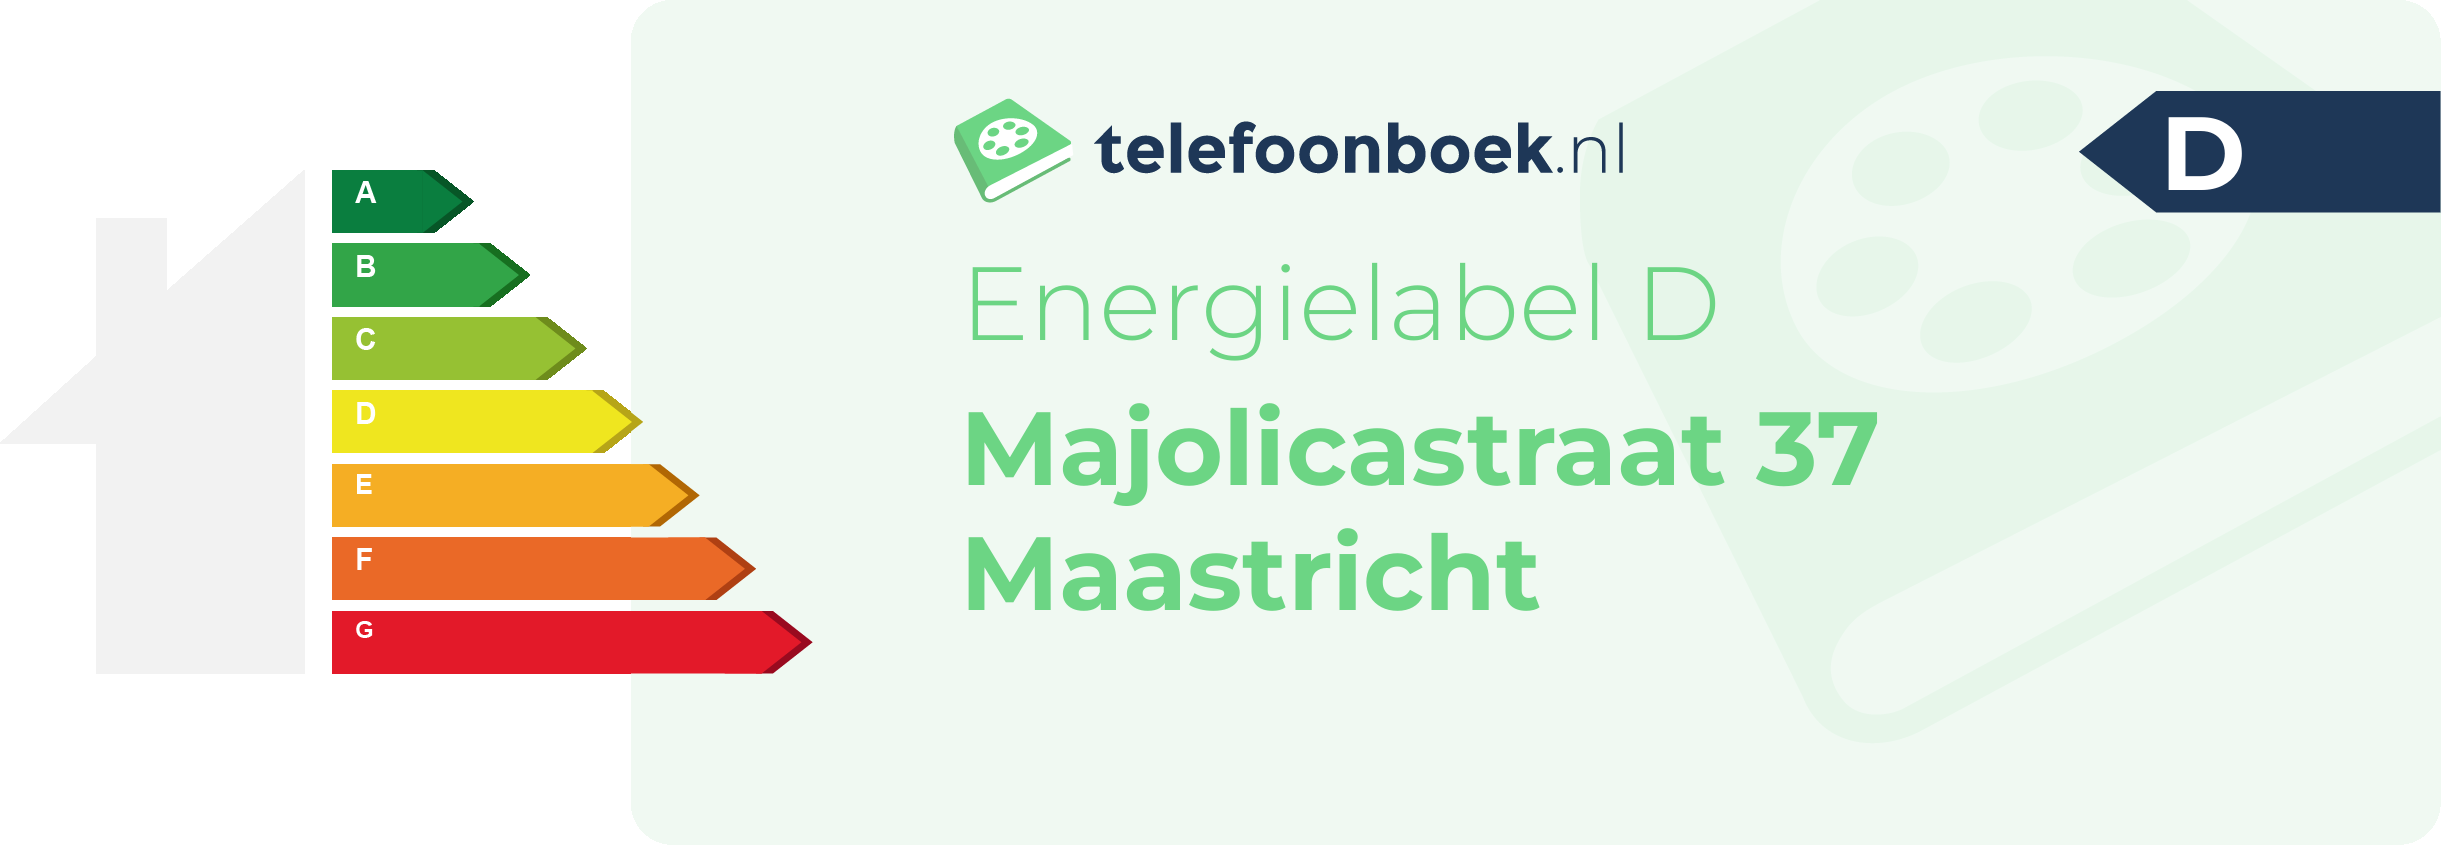 Energielabel Majolicastraat 37 Maastricht